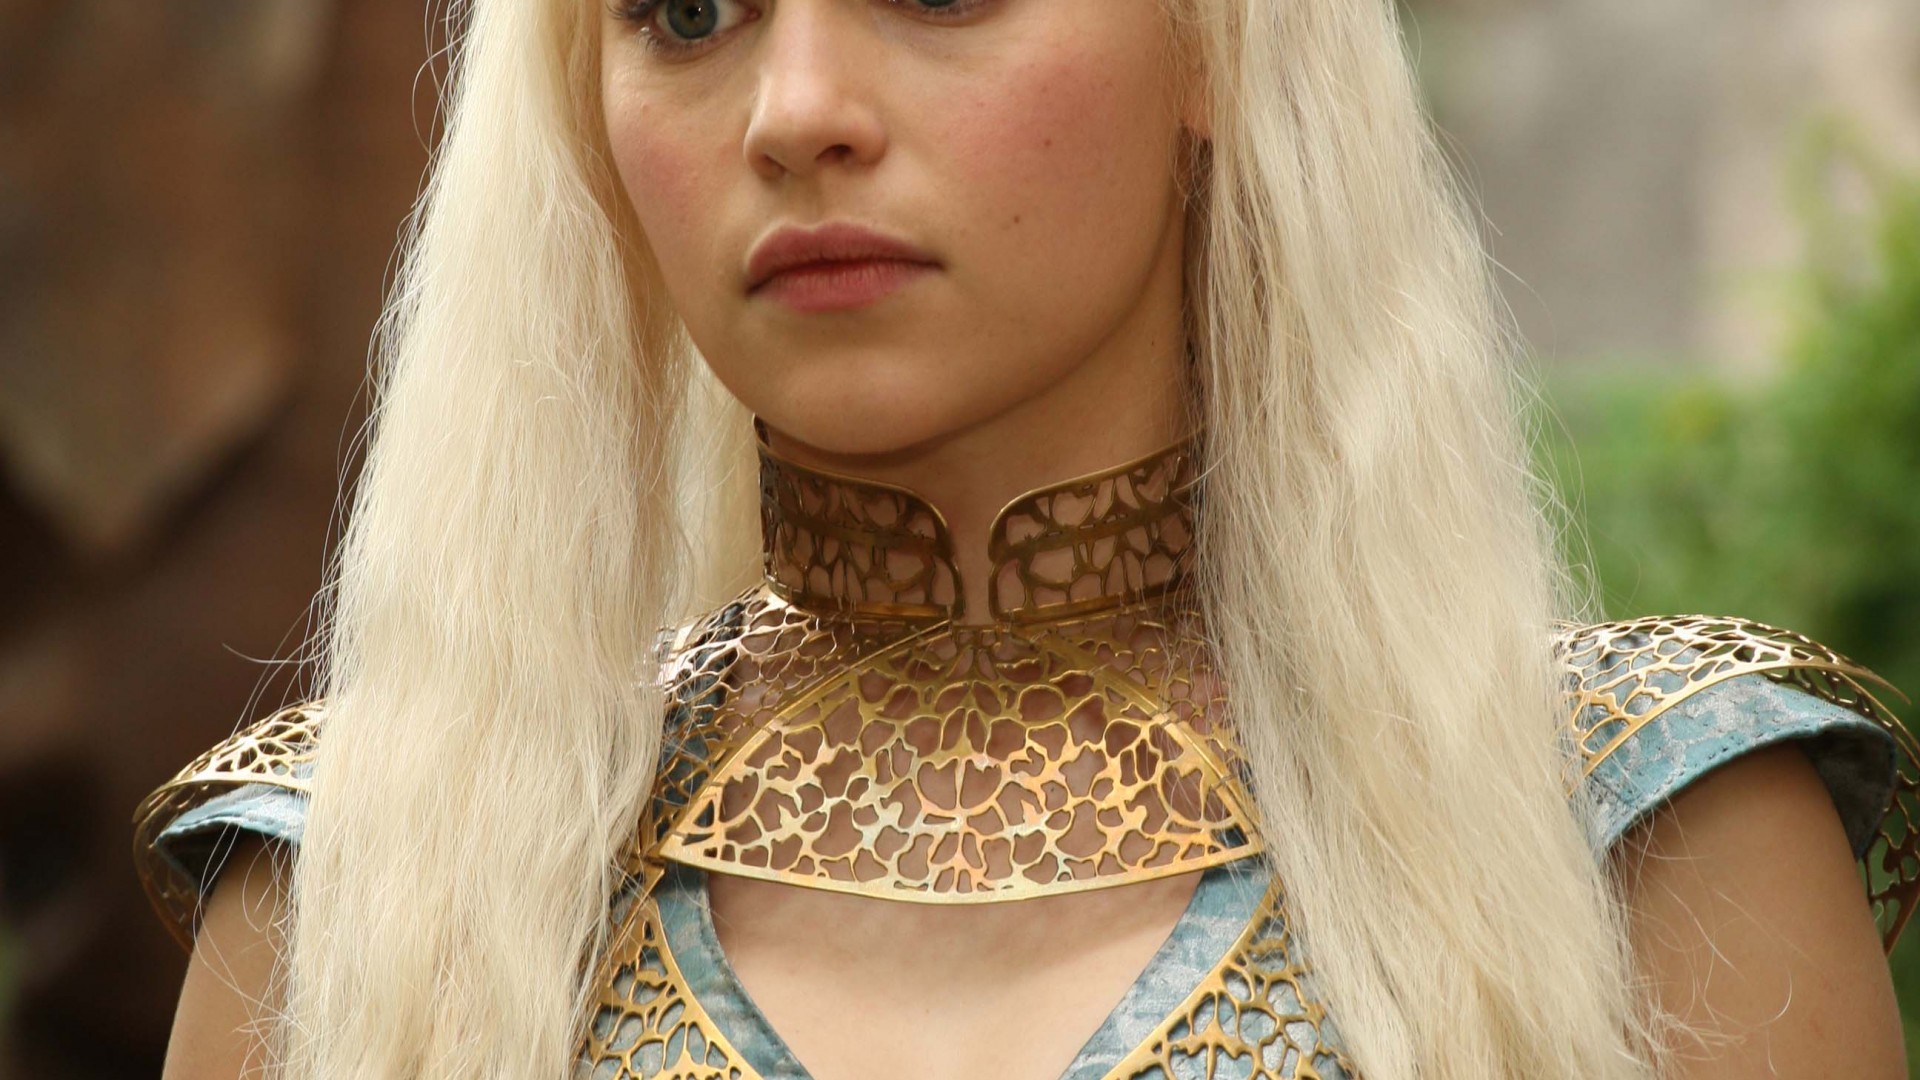 Game Of Thrones Daenerys Targaryen Painting Hd Wallpaper Download